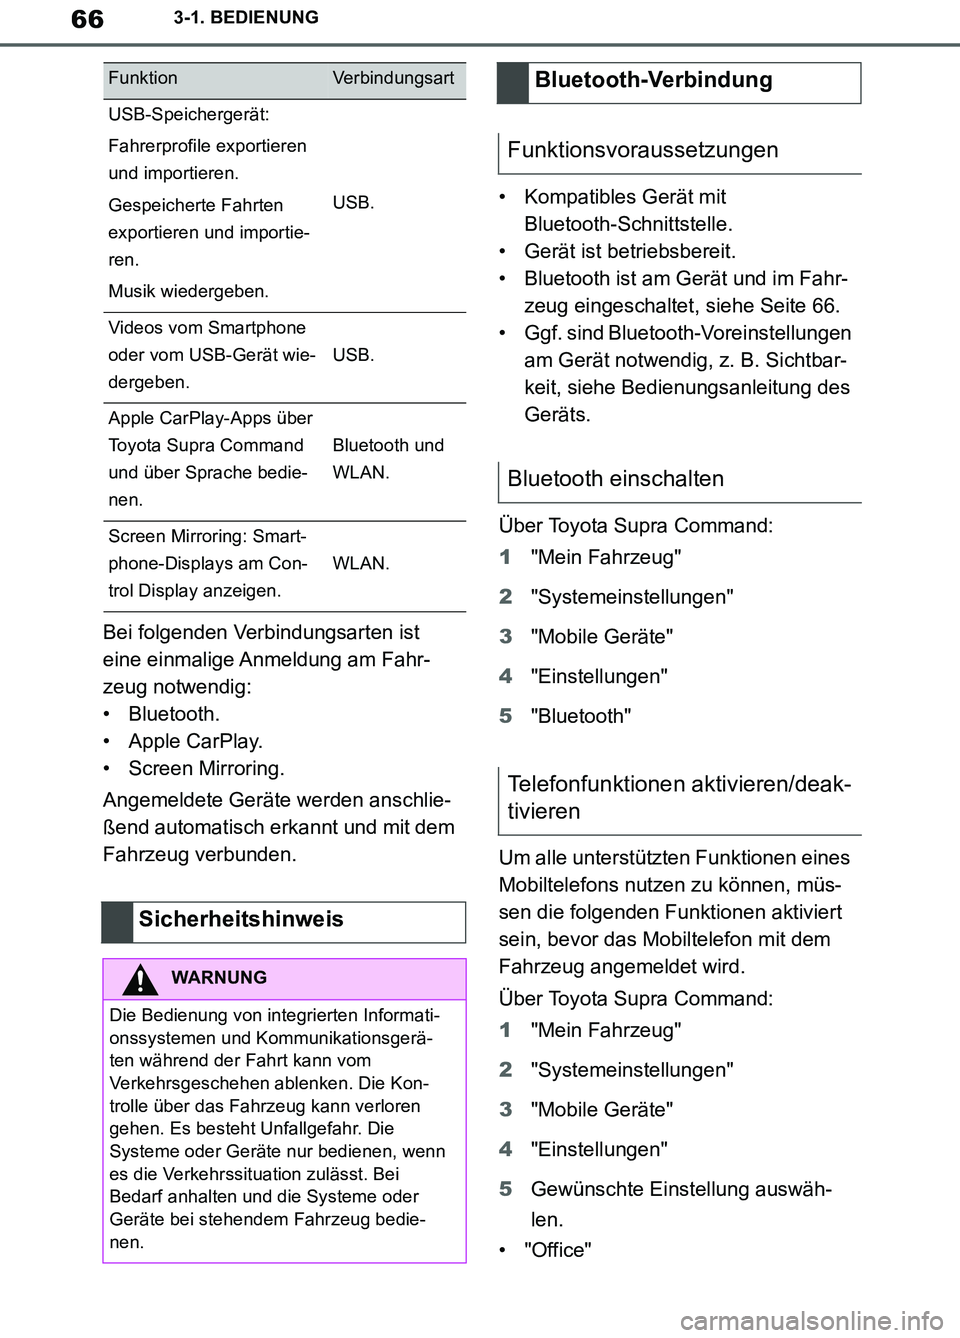 TOYOTA SUPRA 2019  Betriebsanleitungen (in German) 66
Supra Owner’s Manual_EM
3-1. BEDIENUNG
Bei folgenden Verbindungsarten ist 
eine einmalige Anmeldung am Fahr-
zeug notwendig:
• Bluetooth.
• Apple CarPlay.
• Screen Mirroring.
Angemeldete Ge